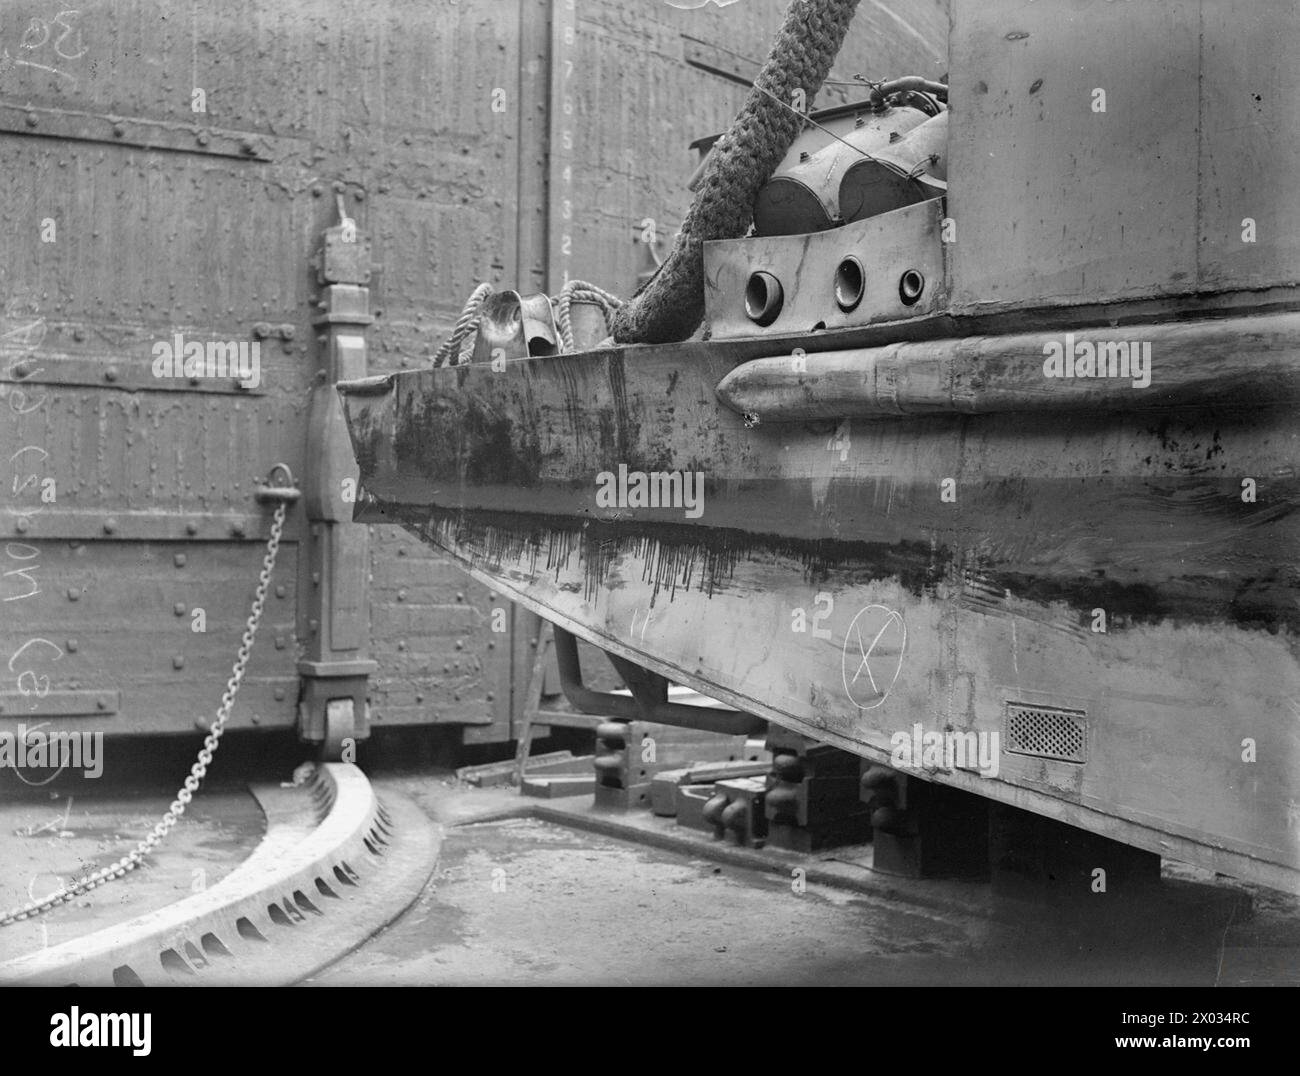 DOMMAGES AU LCT 2649. 22 AVRIL 1944, LANGTON DOCK, LIVERPOOL. - Dommages à la poupe tribord Banque D'Images